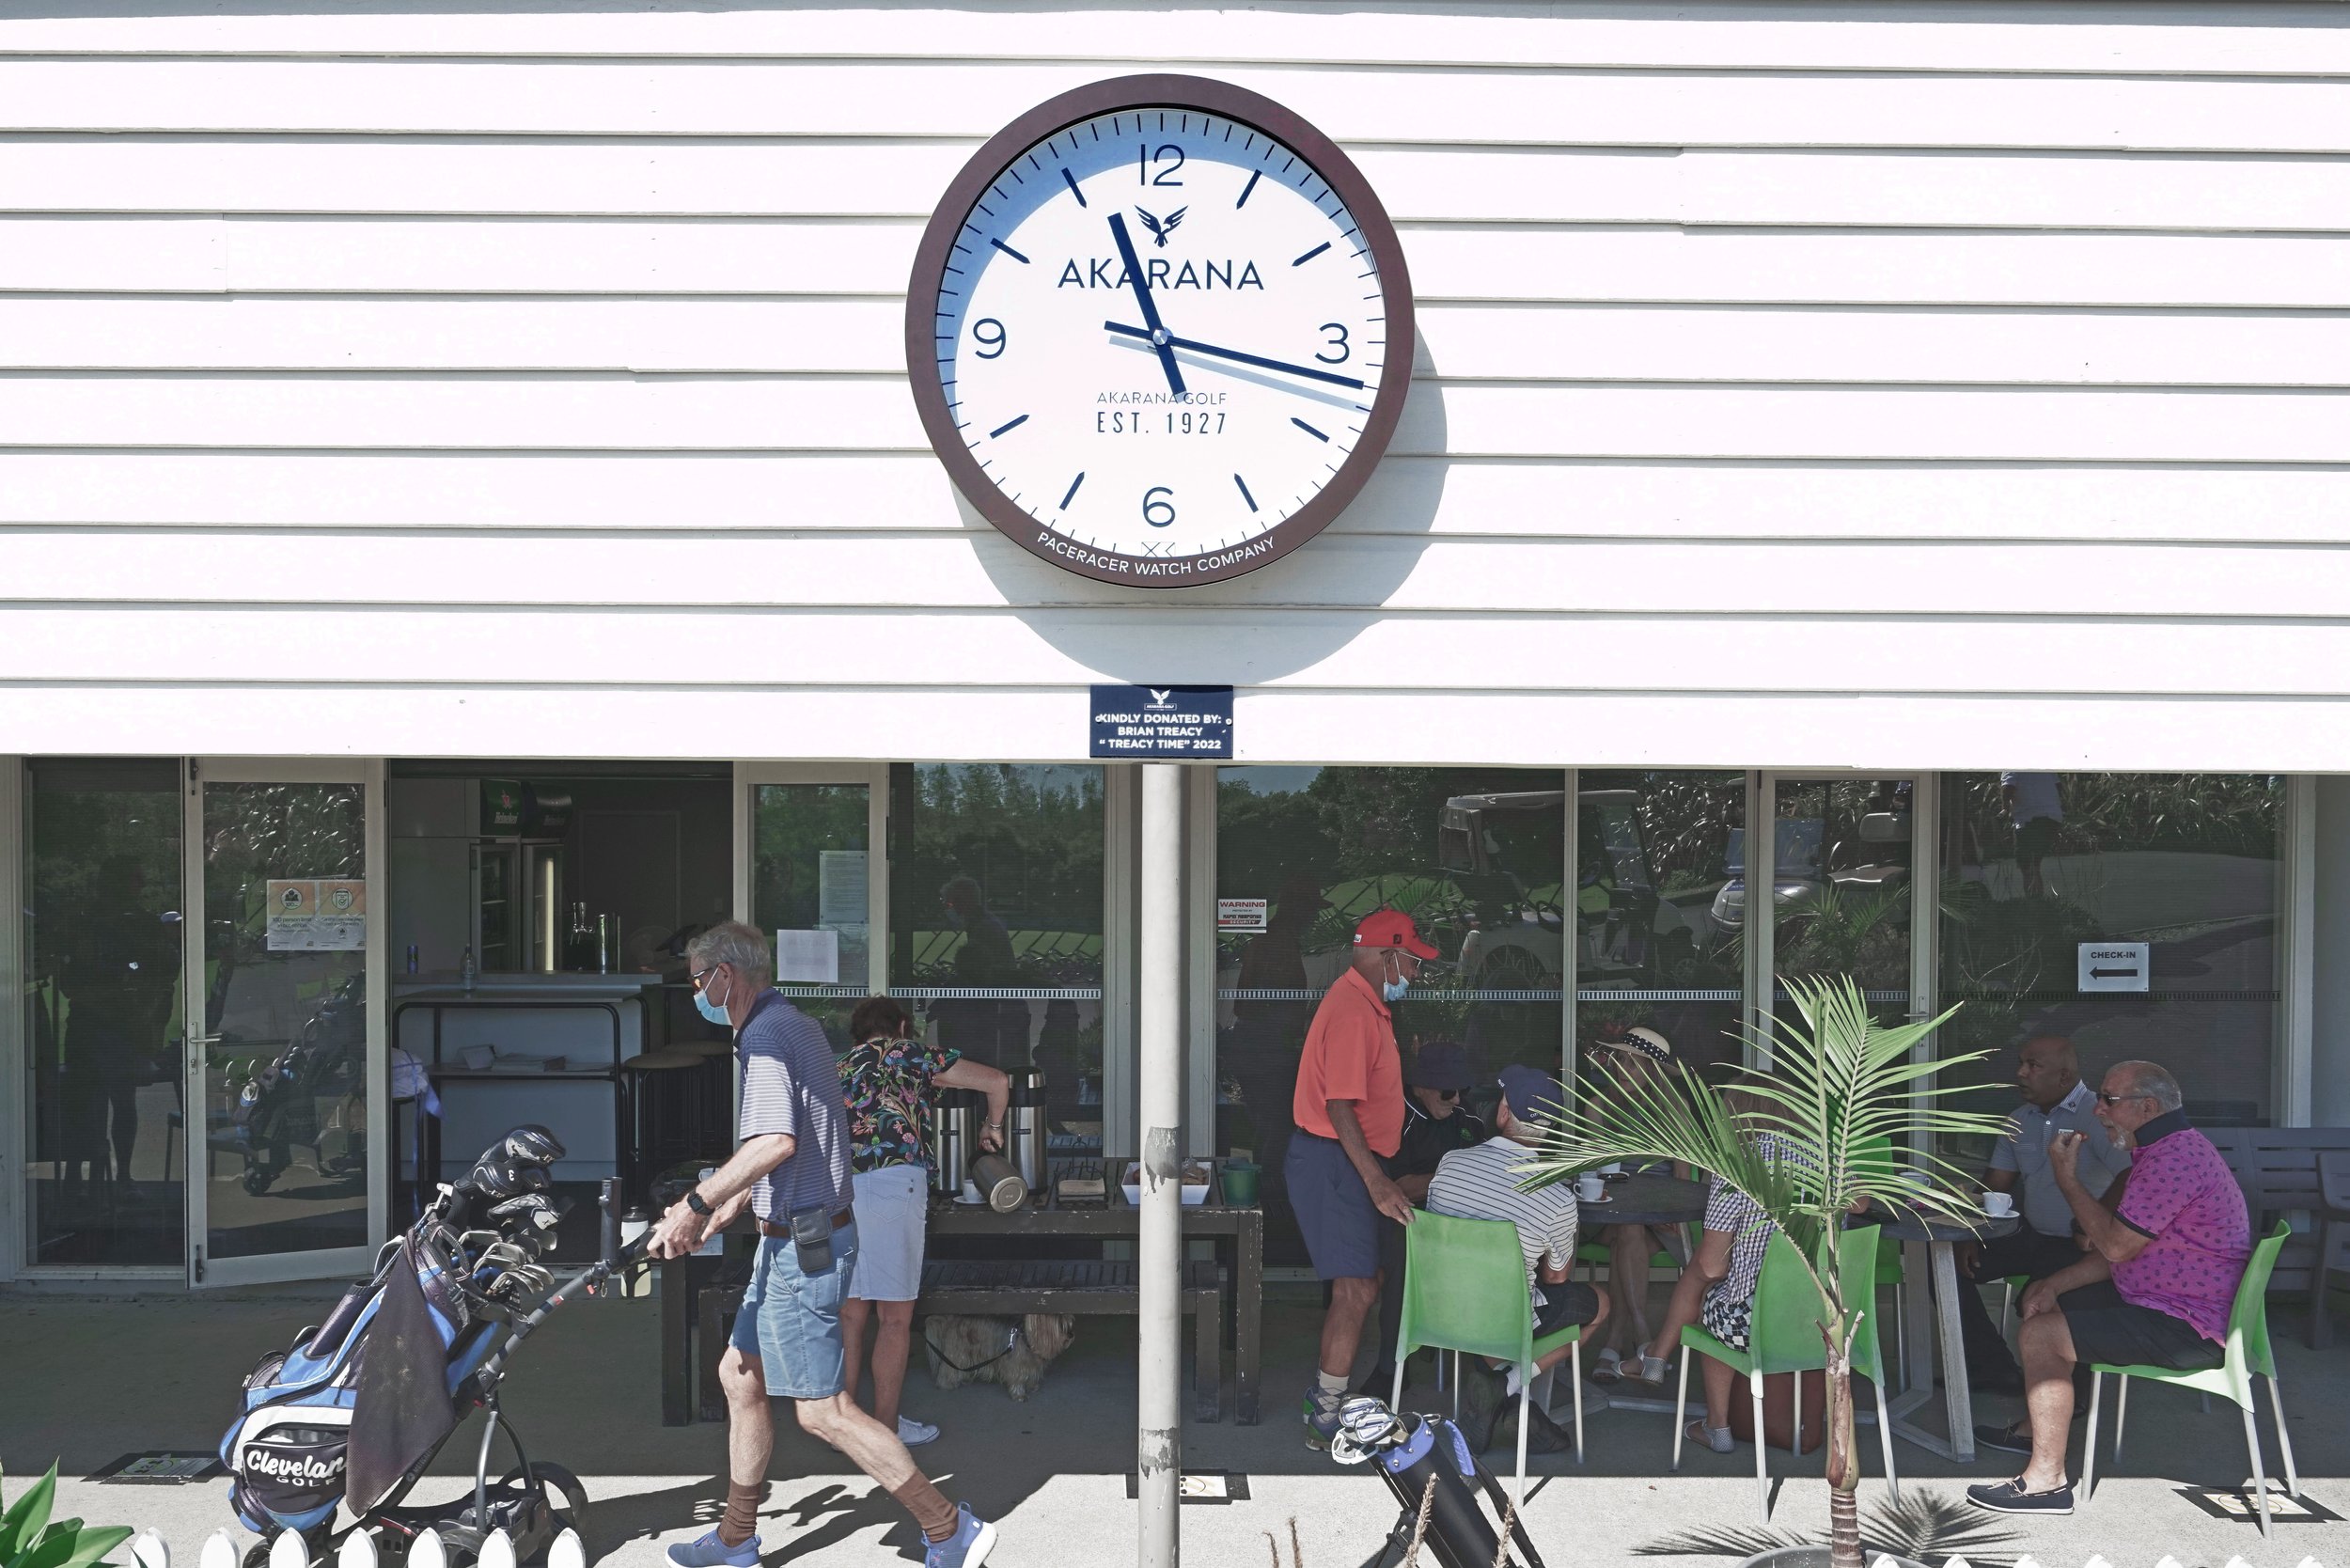 Paceracer-New-Zealand-Made-Outdoor-Clock-Golf-Course-Akarana-H.jpg